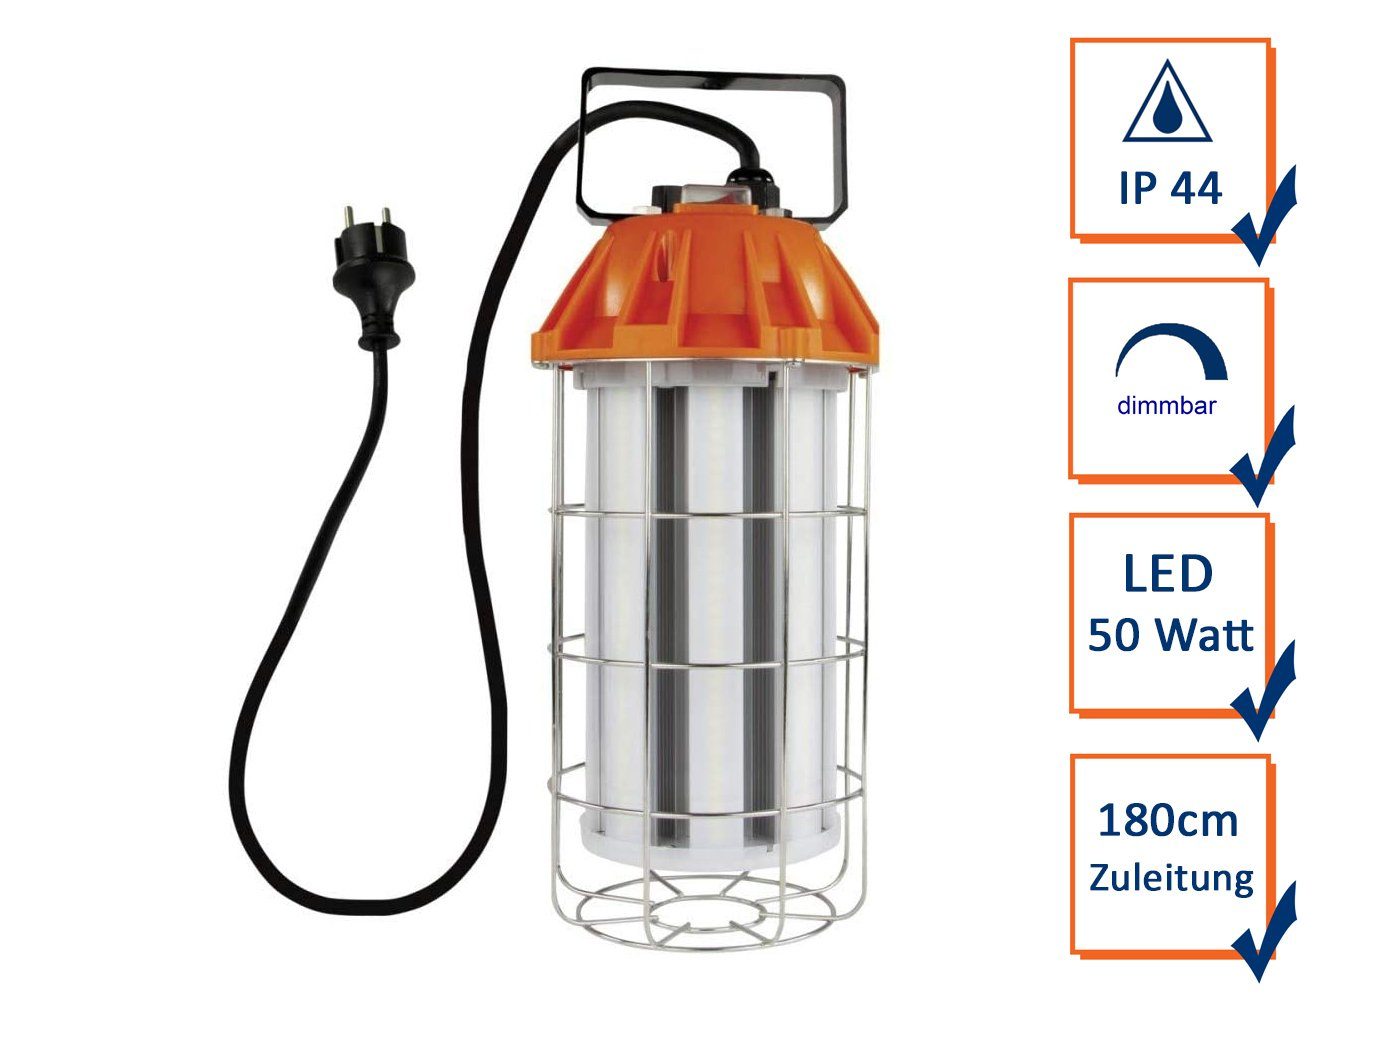 REV Handleuchte, LED Arbeitslampe dimmbar, mit Tragegriff, Werkstattlampe Baulampe